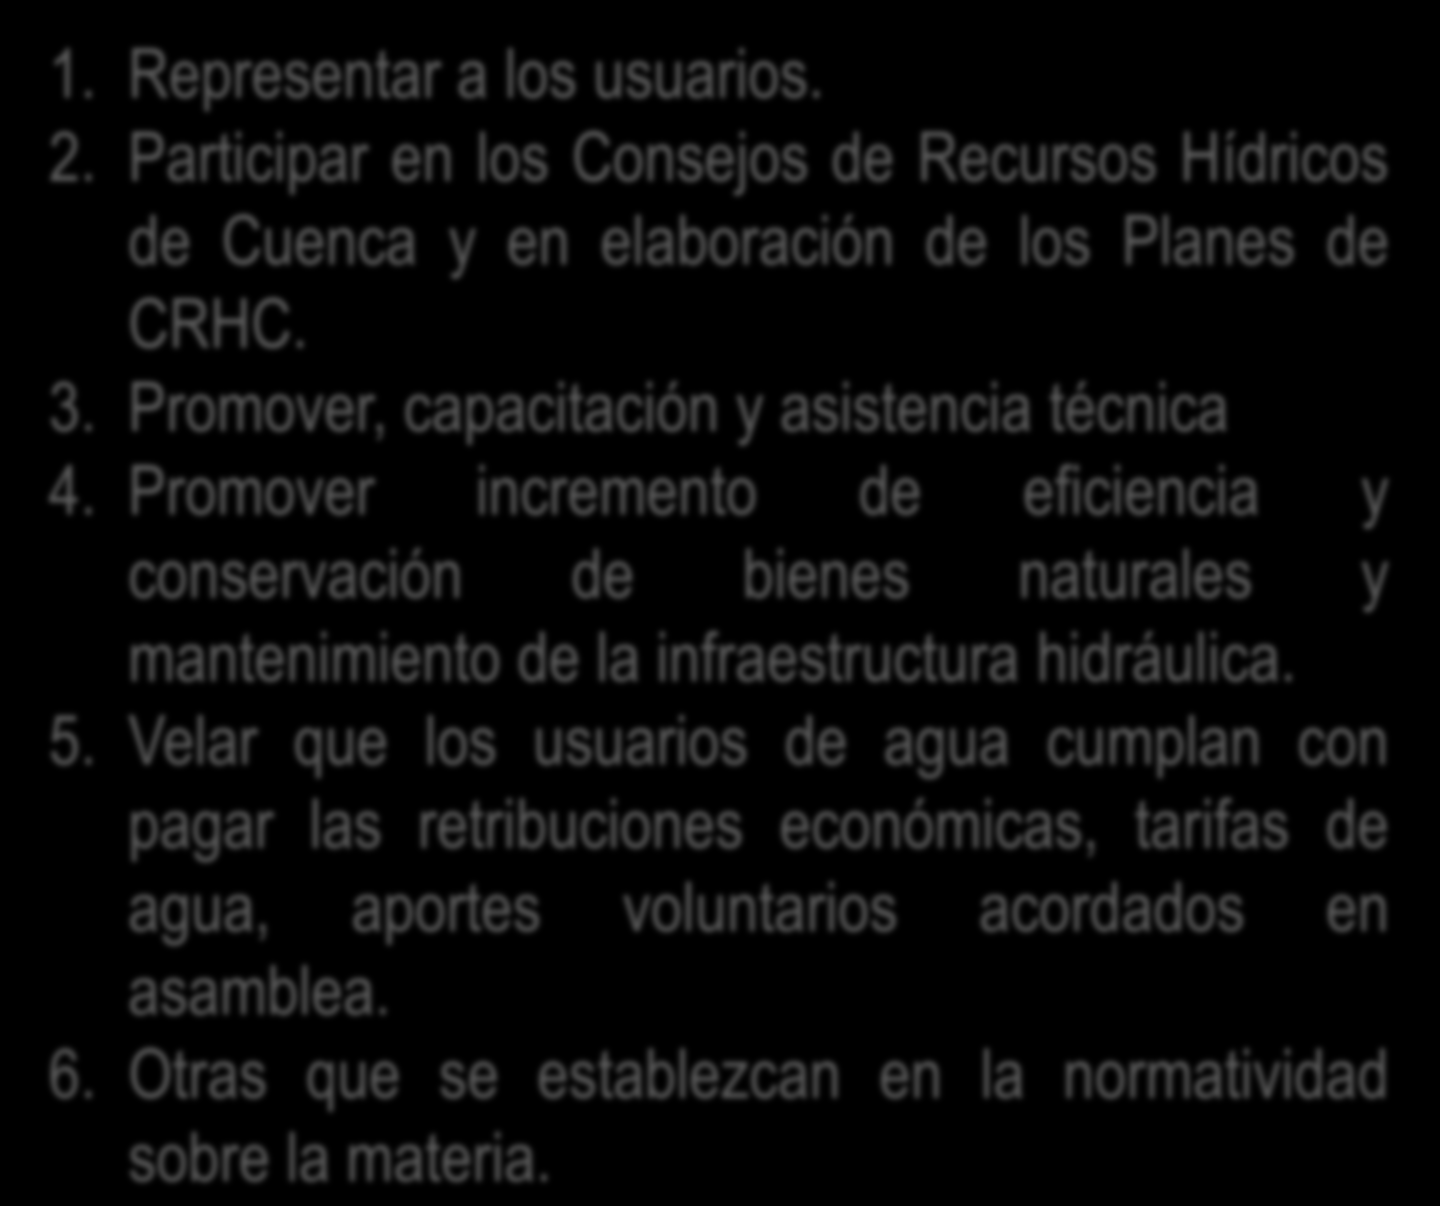 Funciones y Responsabilidades Regl. Art 40 1. Representar a los usuarios. 2. Participar en los Consejos de Recursos Hídricos de Cuenca y en elaboración de los Planes de CRHC. 3.